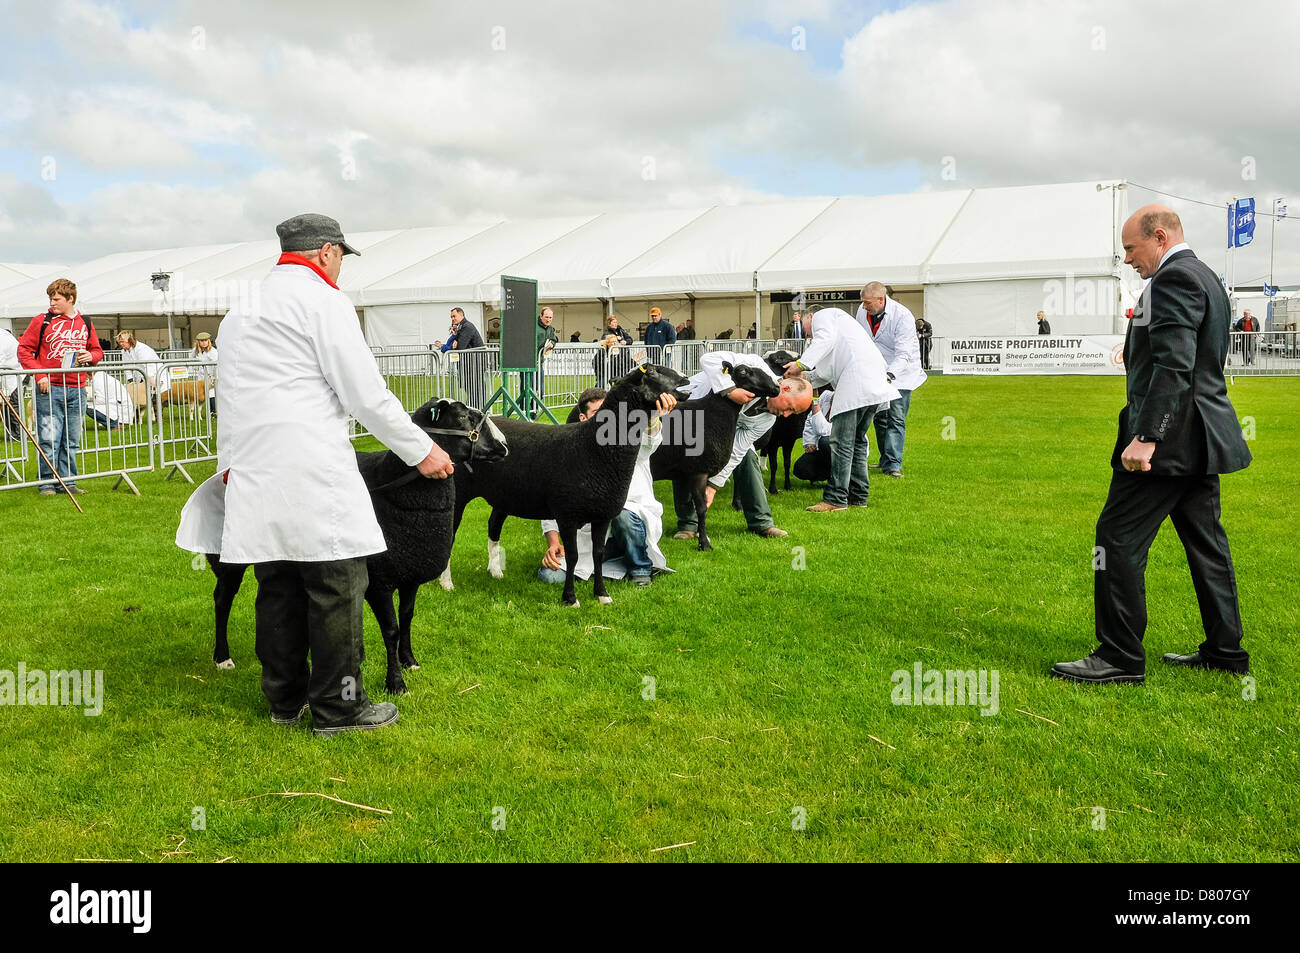 Lisburn, Irlande du Nord. Le 15 mai 2013. Un juge examine les nouveaux venus dans le Balwen catégorie race.Crédit : Stephen Barnes/Alamy Live News Banque D'Images